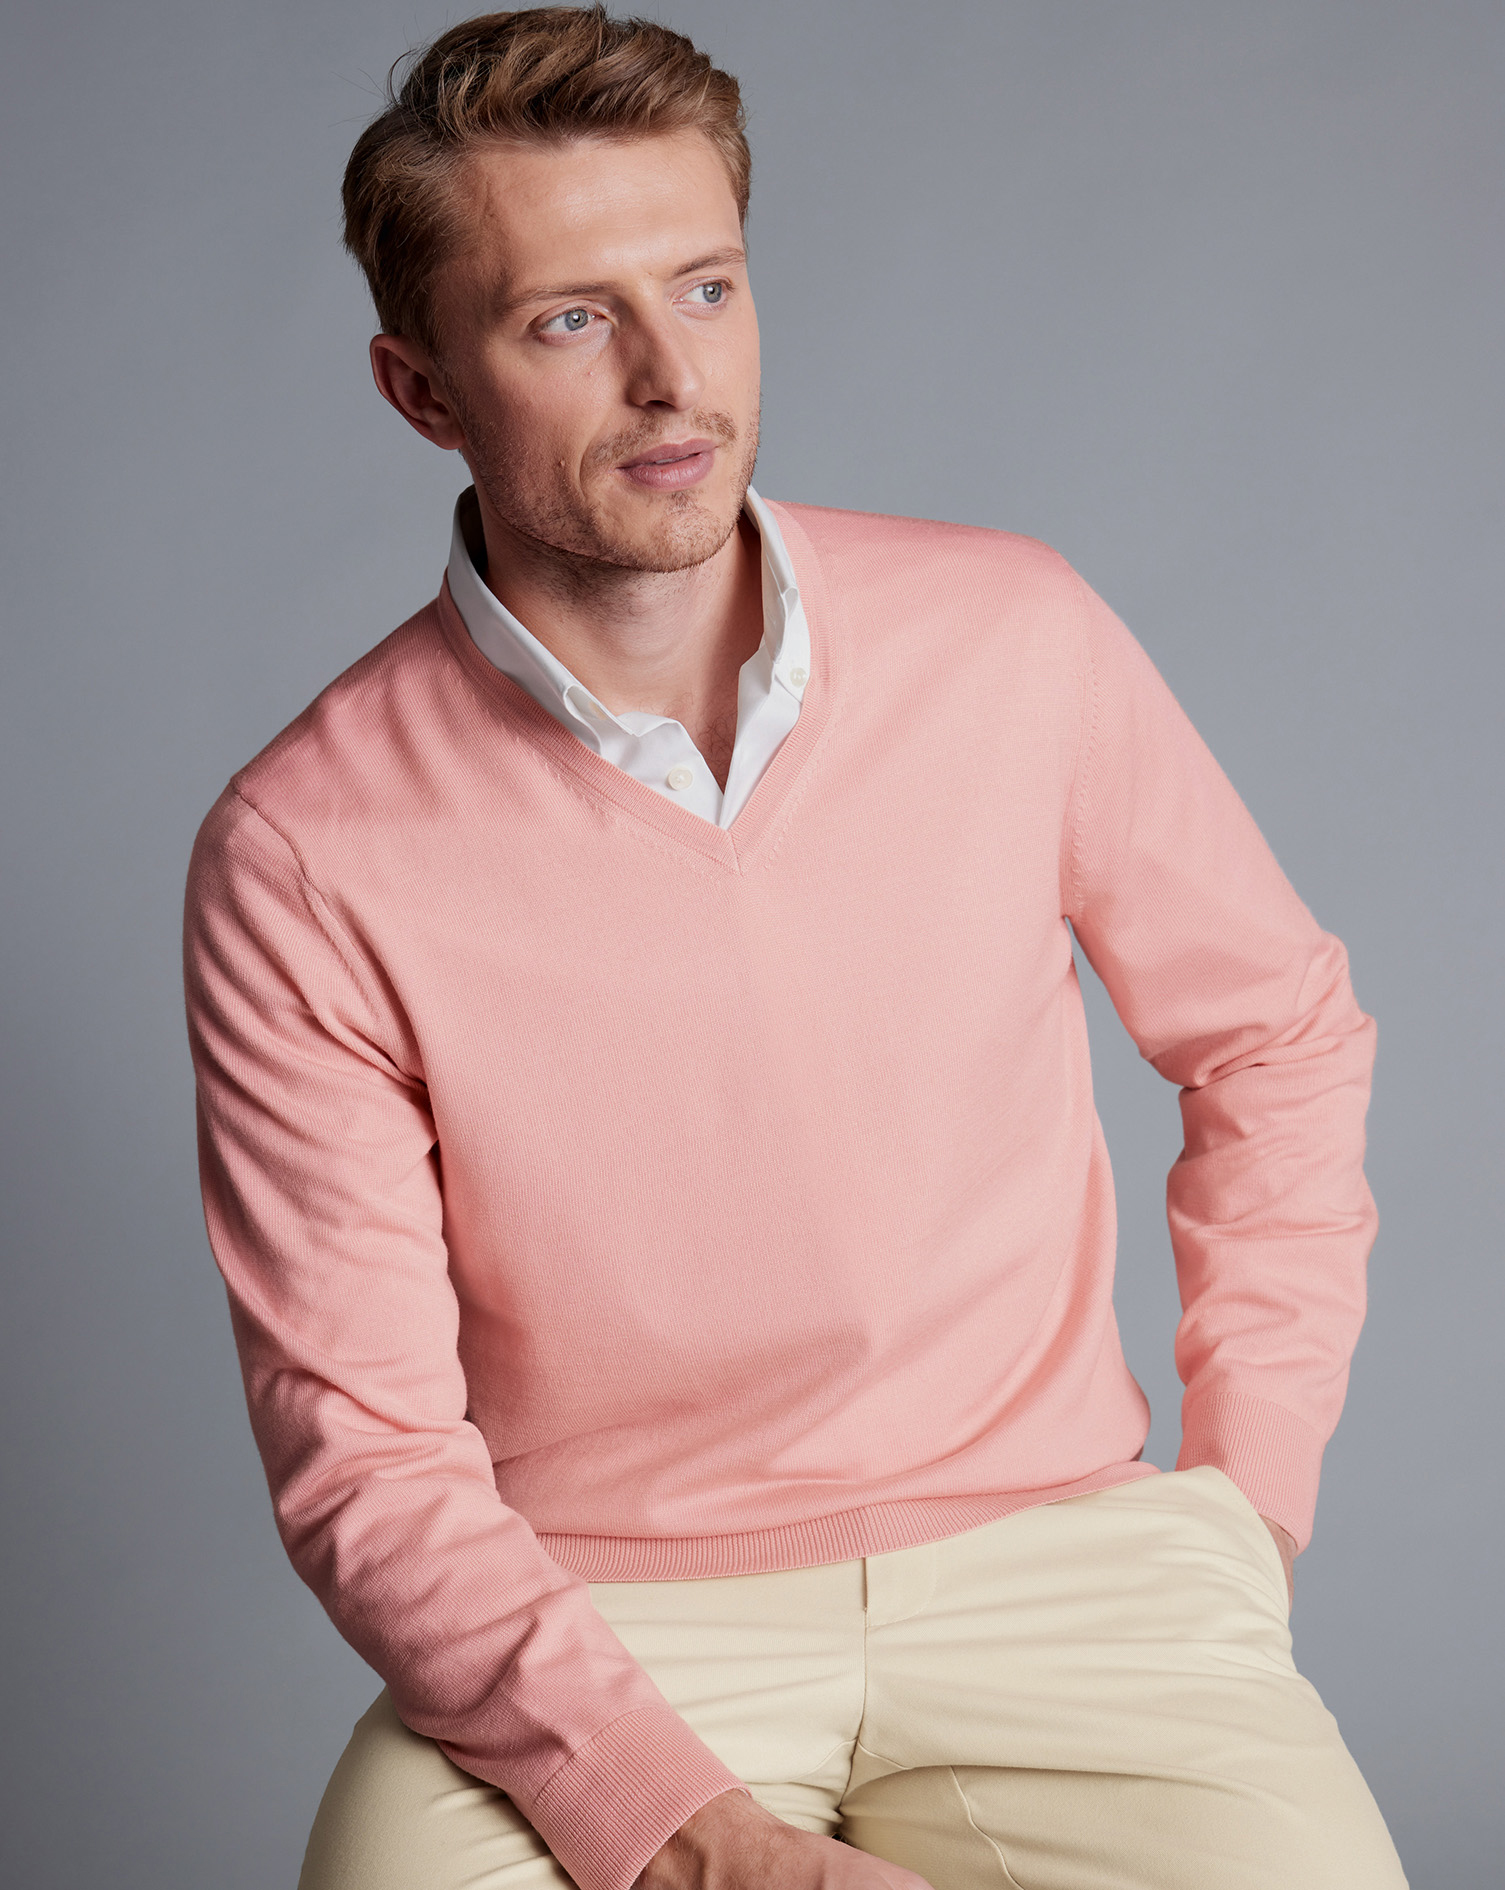 Men's Charles Tyrwhitt Merino V-Neck Sweater - Light Coral Pink Size Large Wool
